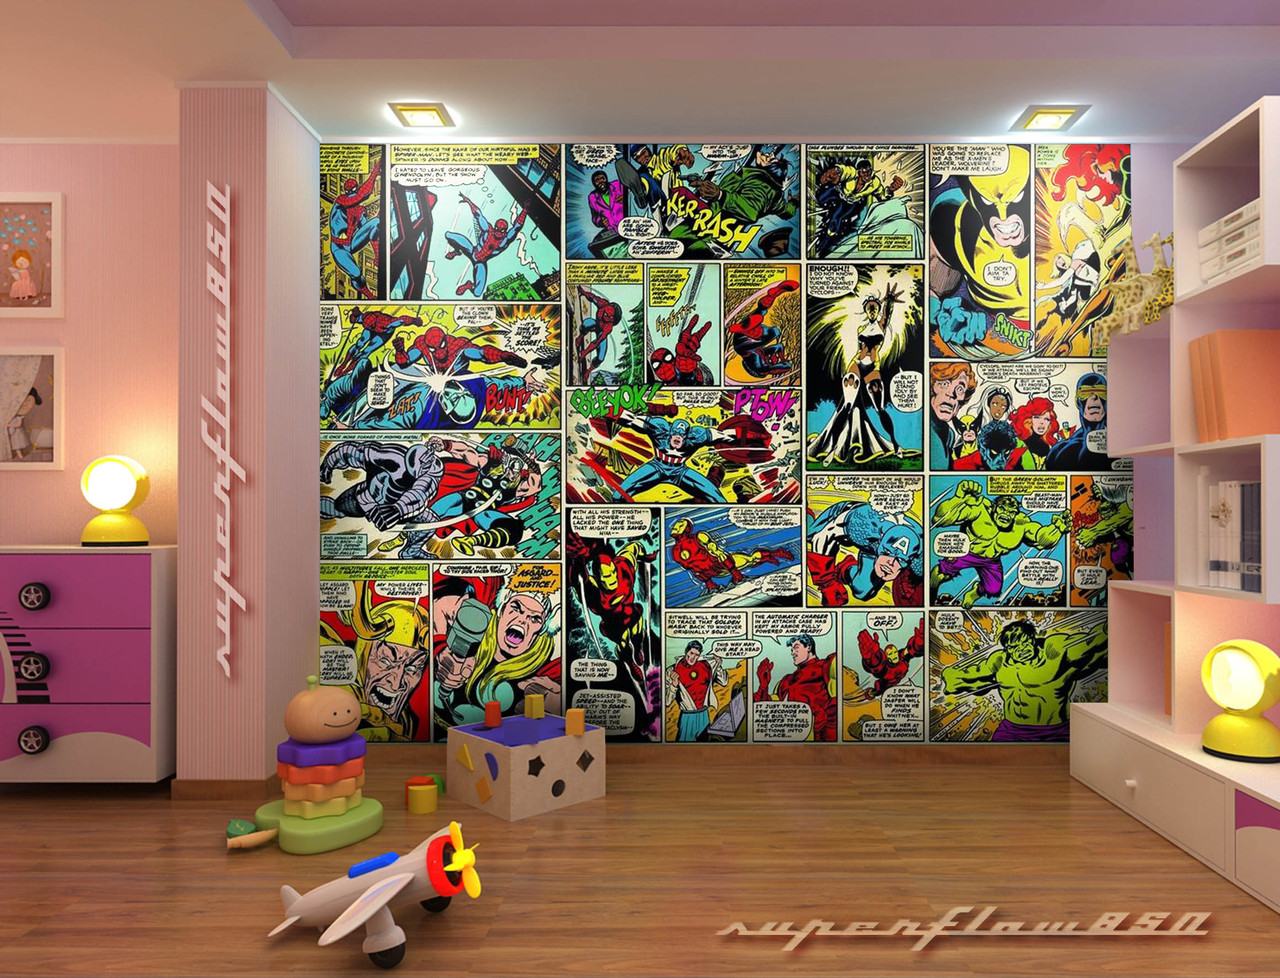 marvel wallpaper for bedroom,wall,interior design,room,art,visual arts